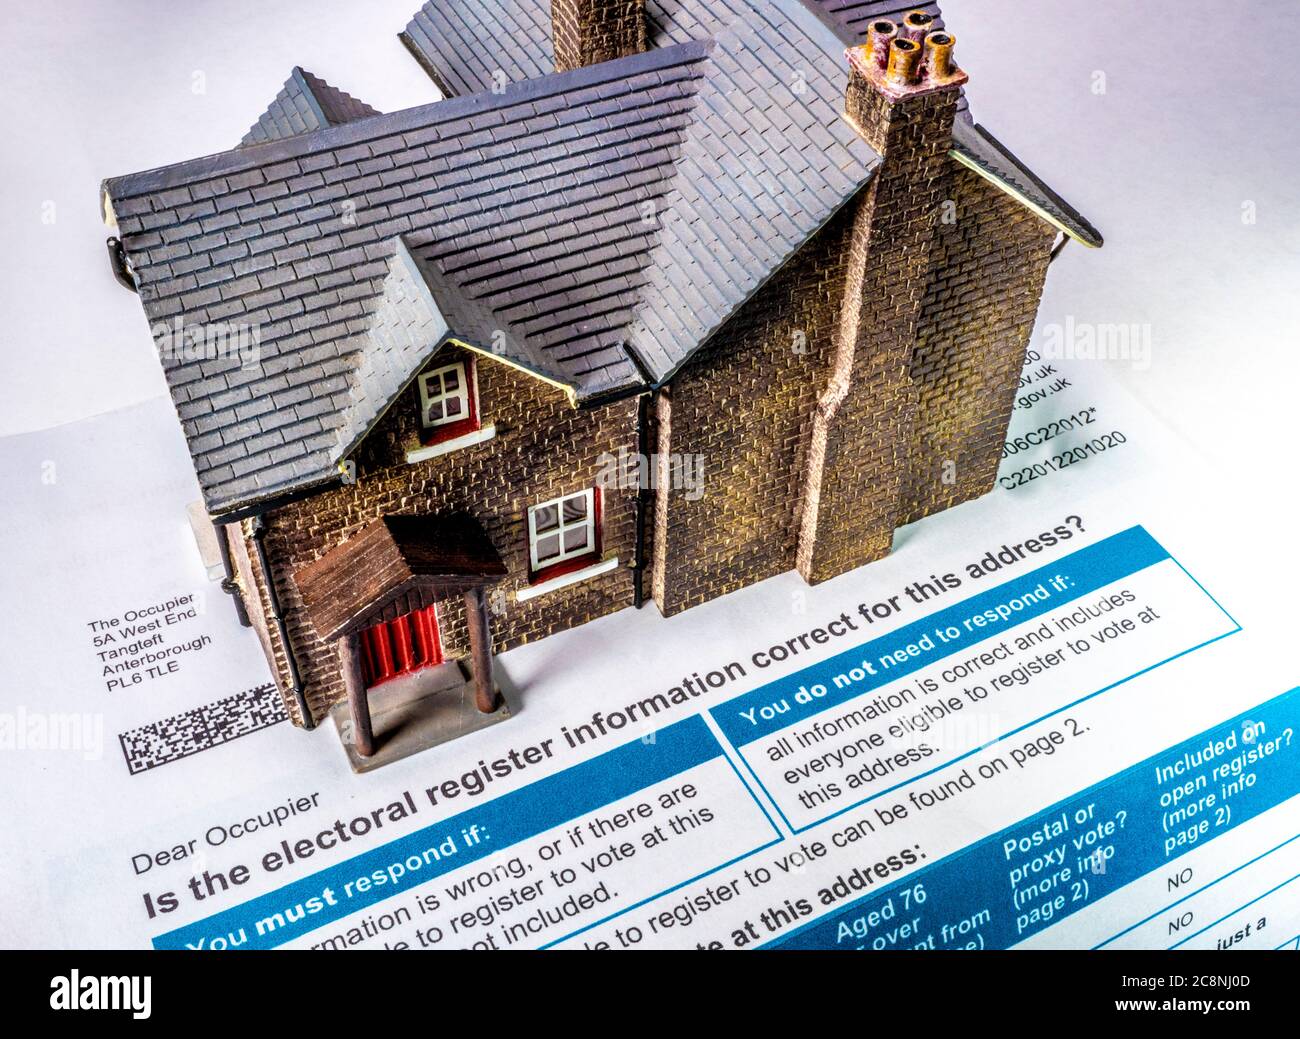 Modèle de maison sur un formulaire de conseil, envoyé à l'occupant d'une maison pour vérifier l'exactitude des occupants / résidents aux fins de l'enregistrement électoral (Royaume-Uni). Banque D'Images